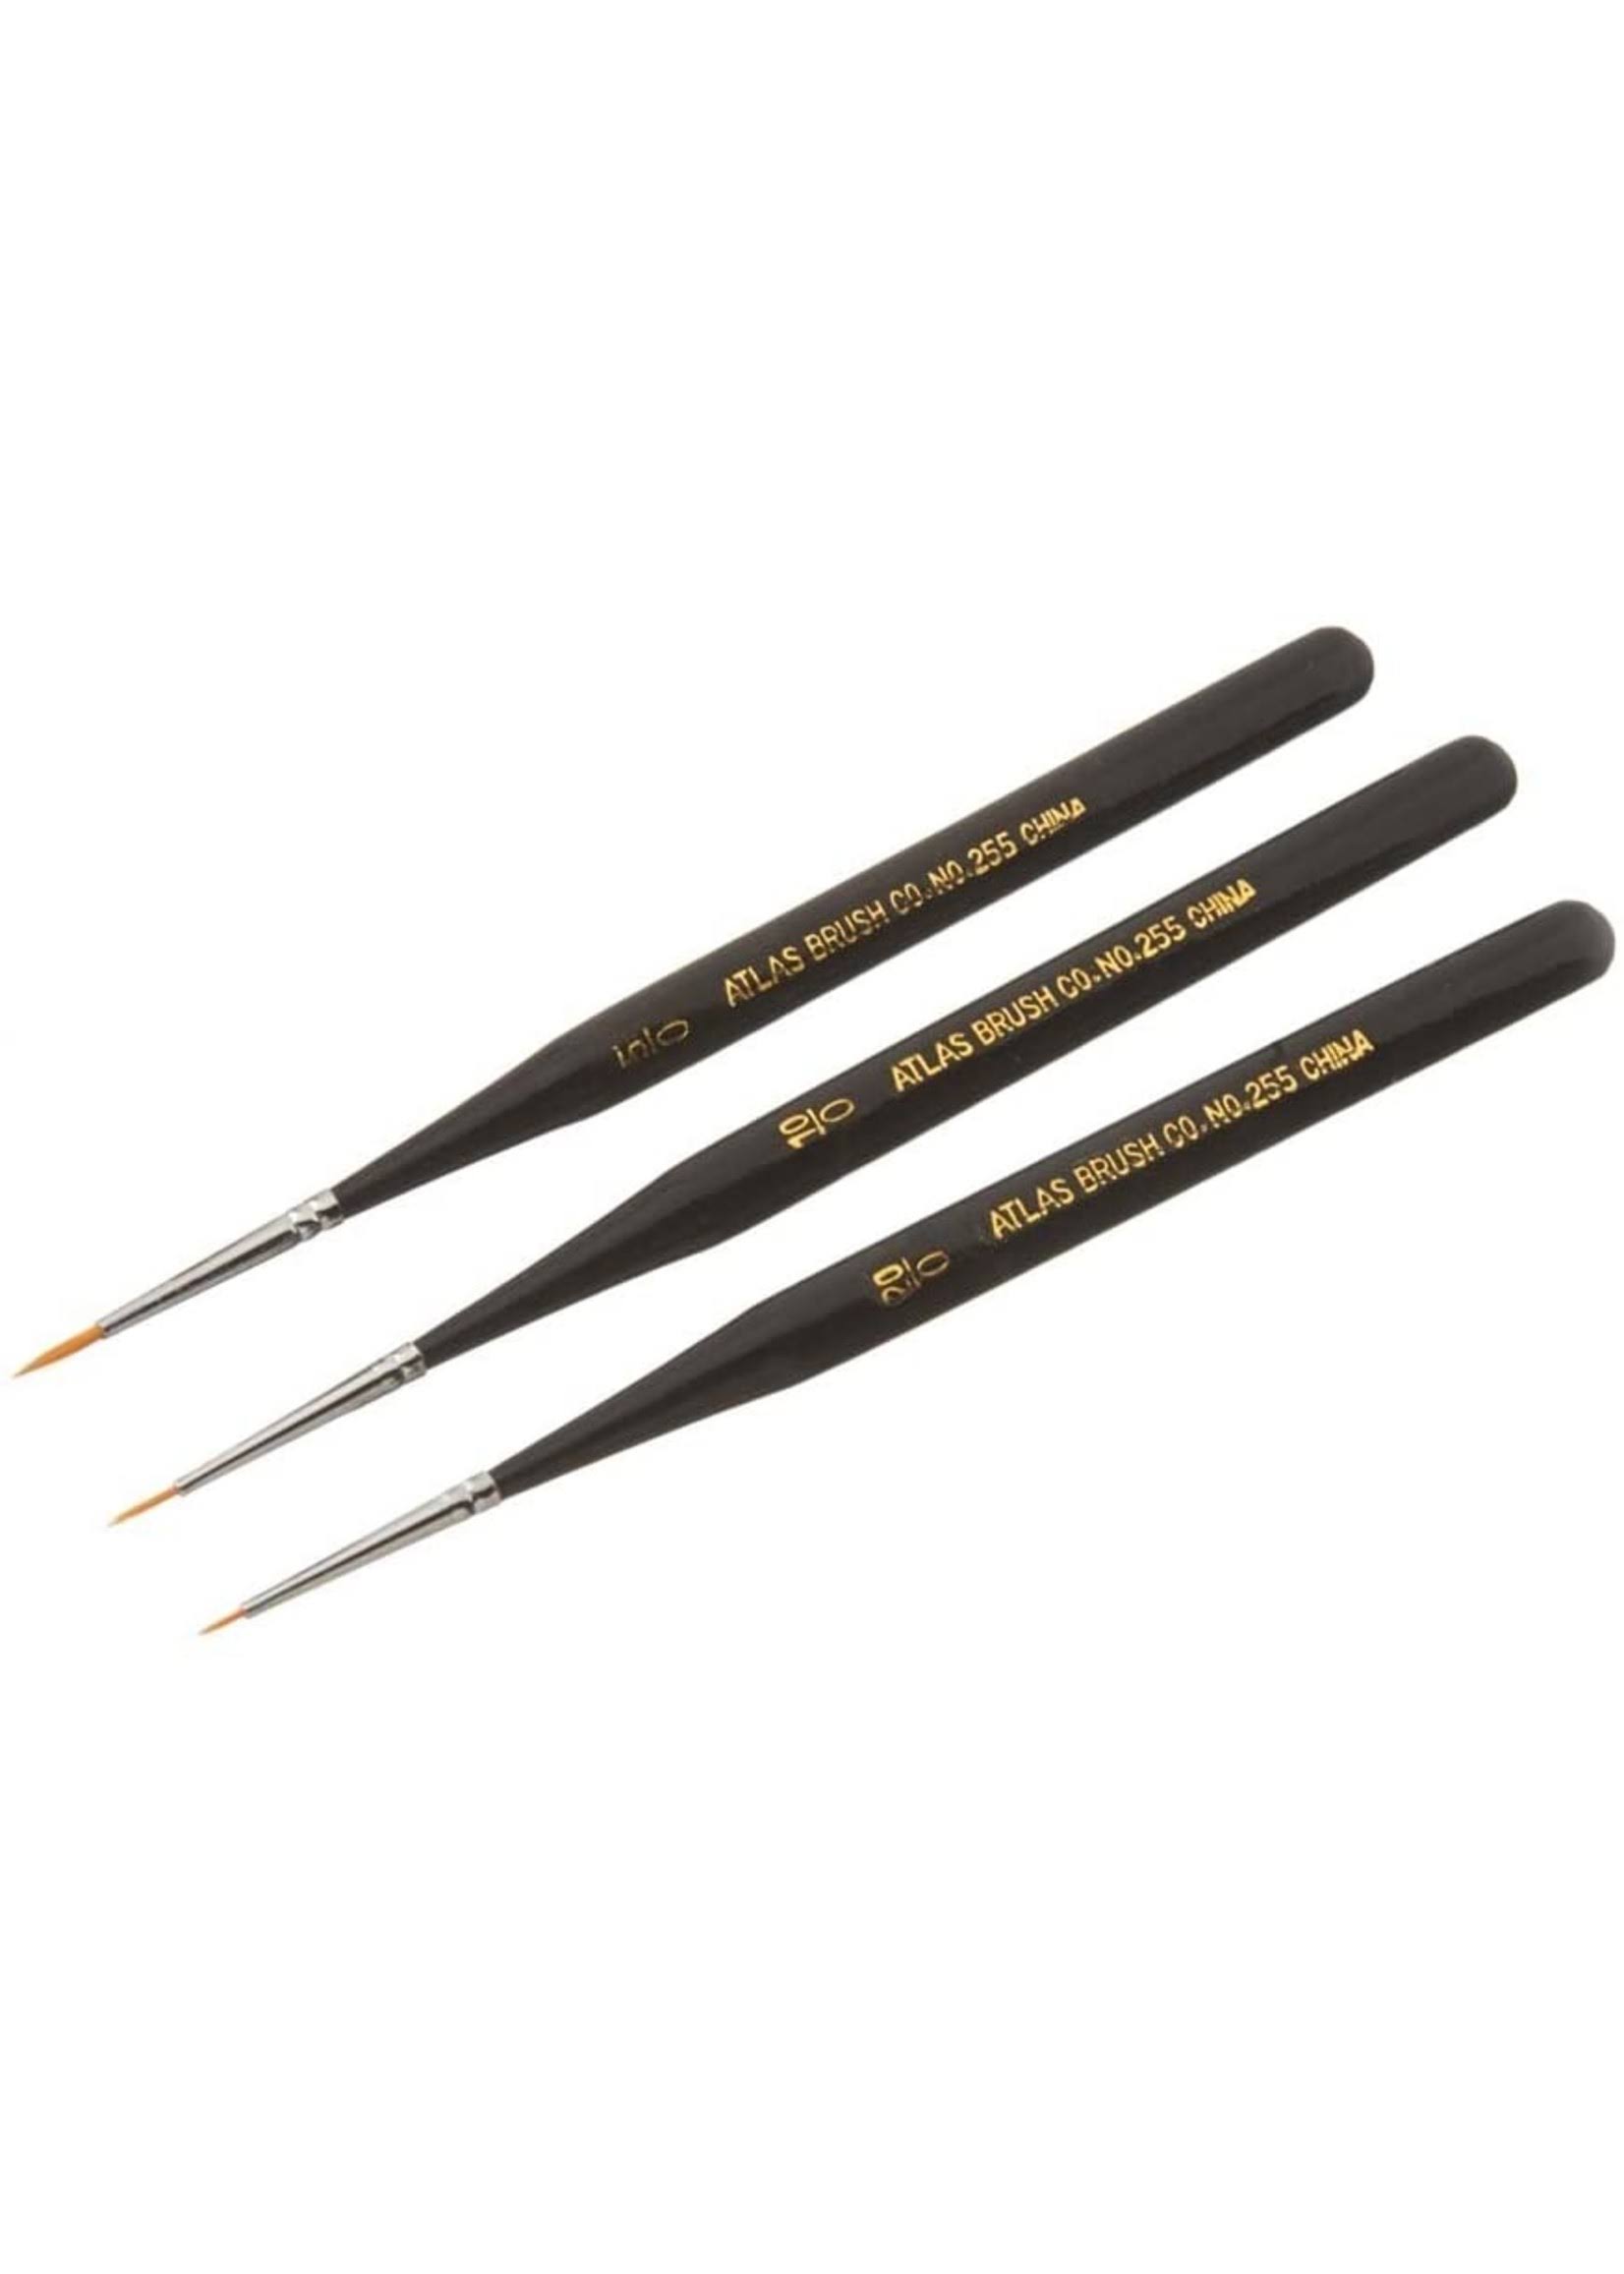 Atlas Brush Golden Taklon Ultra Detail Brush Set - 3pc